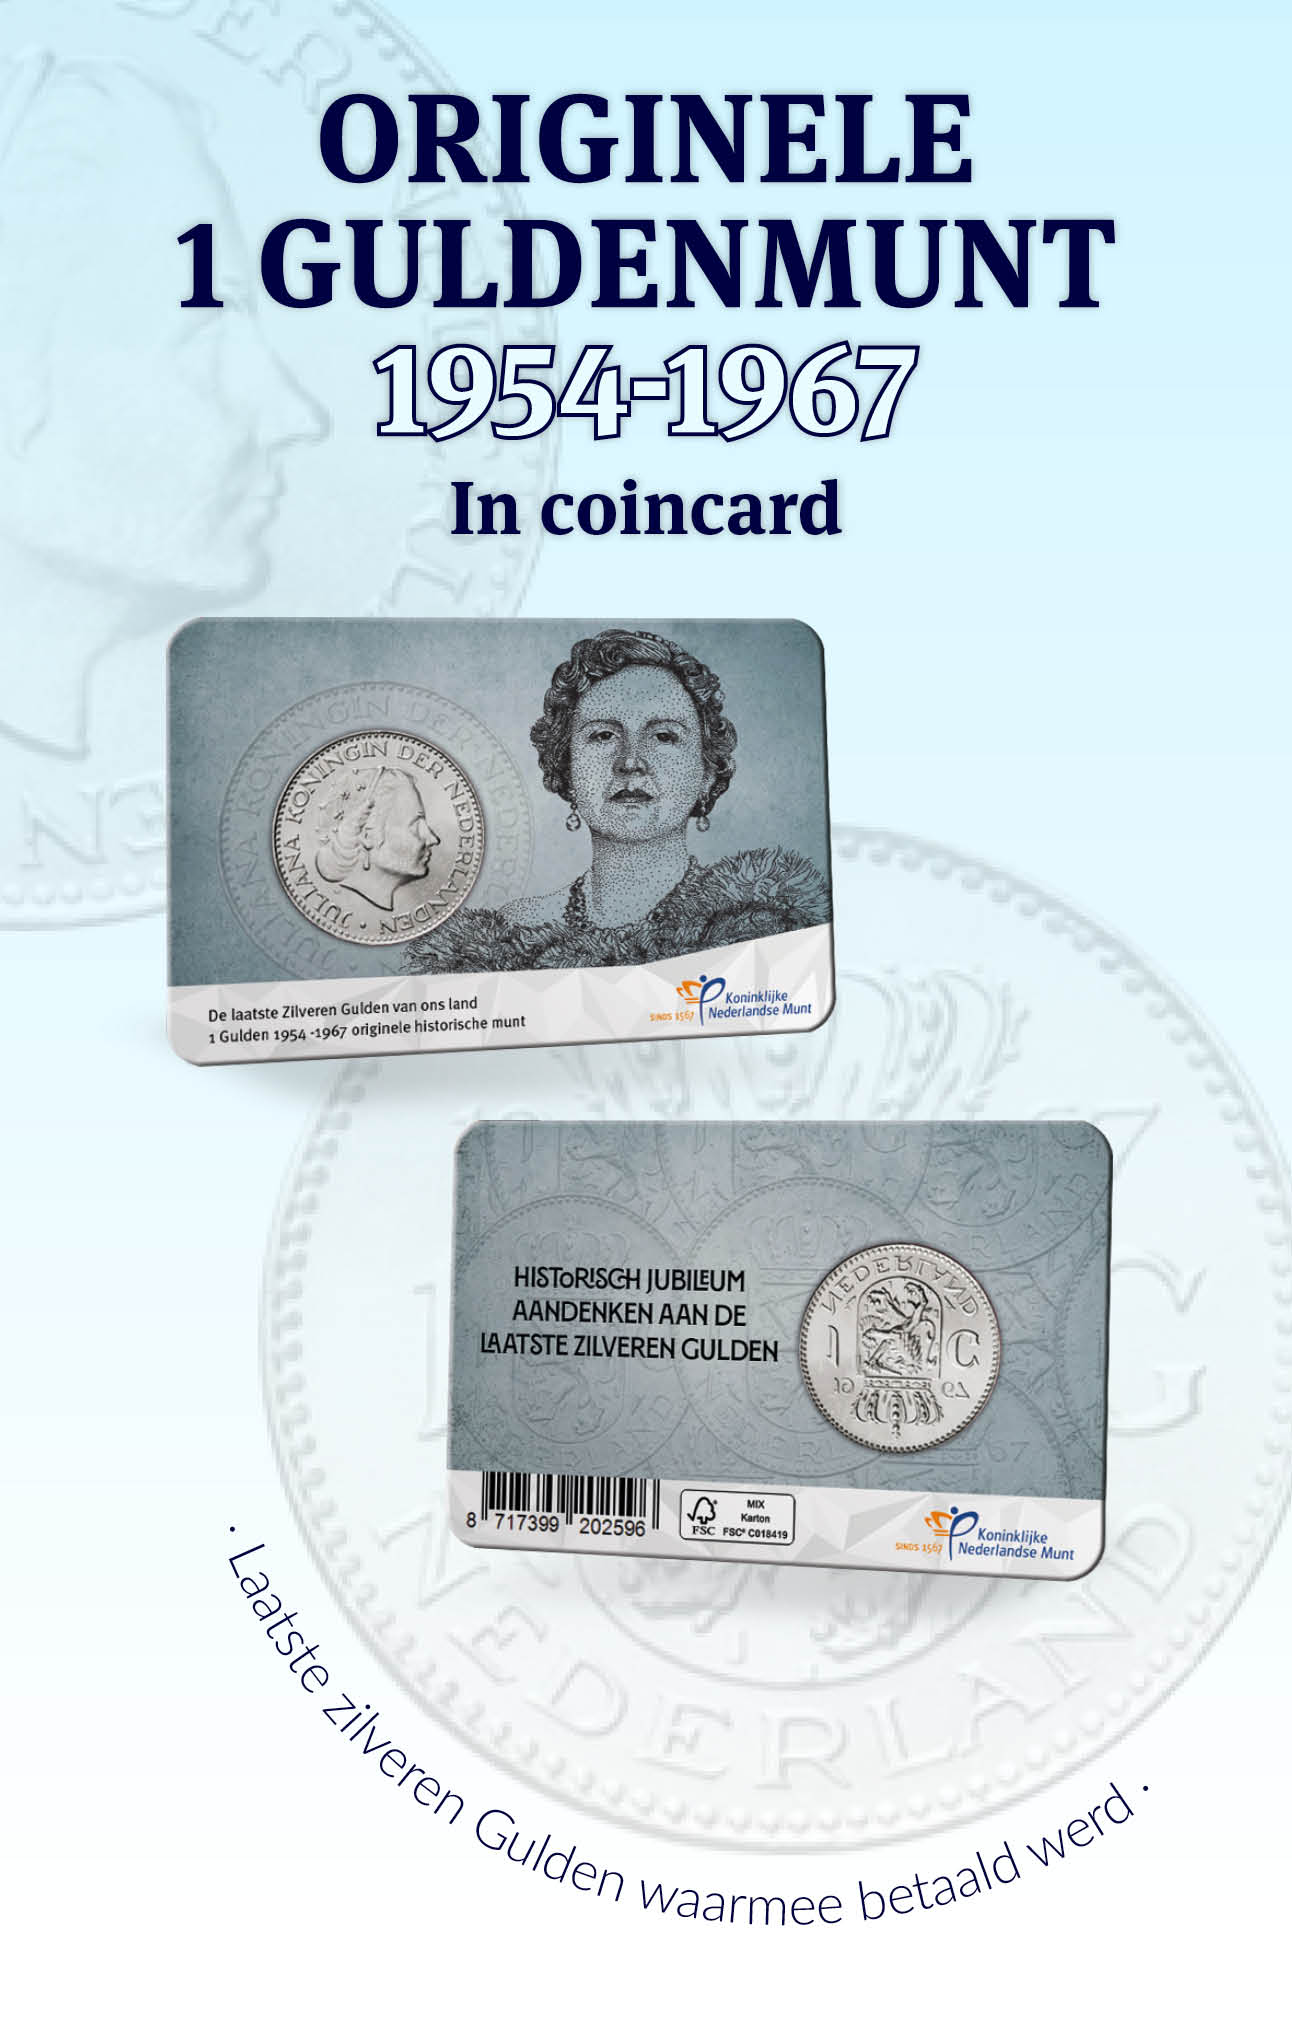 Laatste zilveren Gulden waarmee betaald werd in coincard